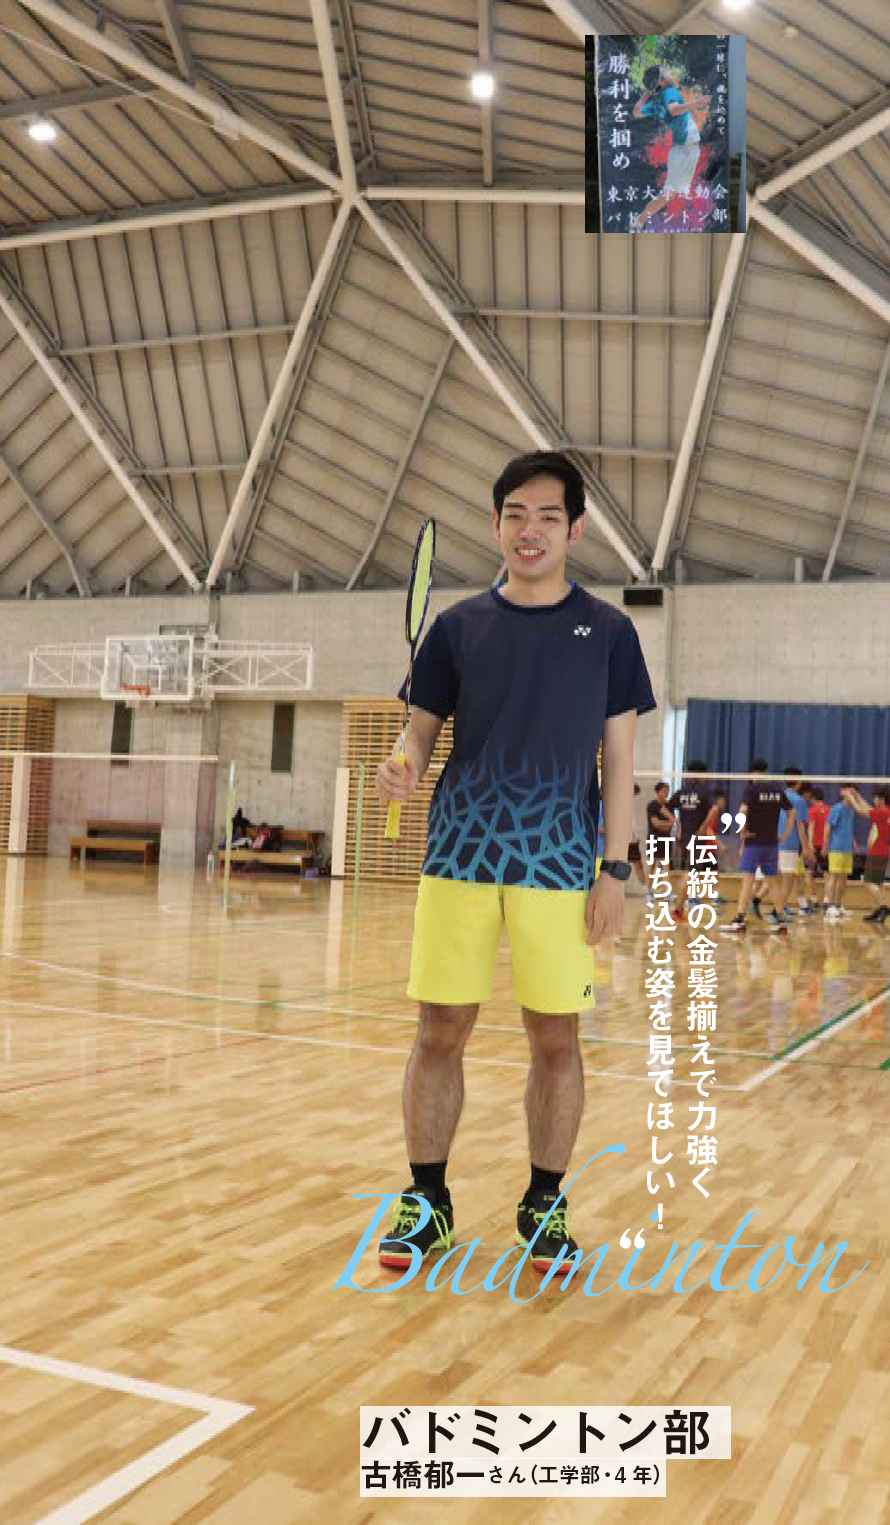 バドミントン部 古橋郁一さん（工学部・4年） “伝統の金髪揃えで力強く打ち込む姿を見てほしい！” Badminton